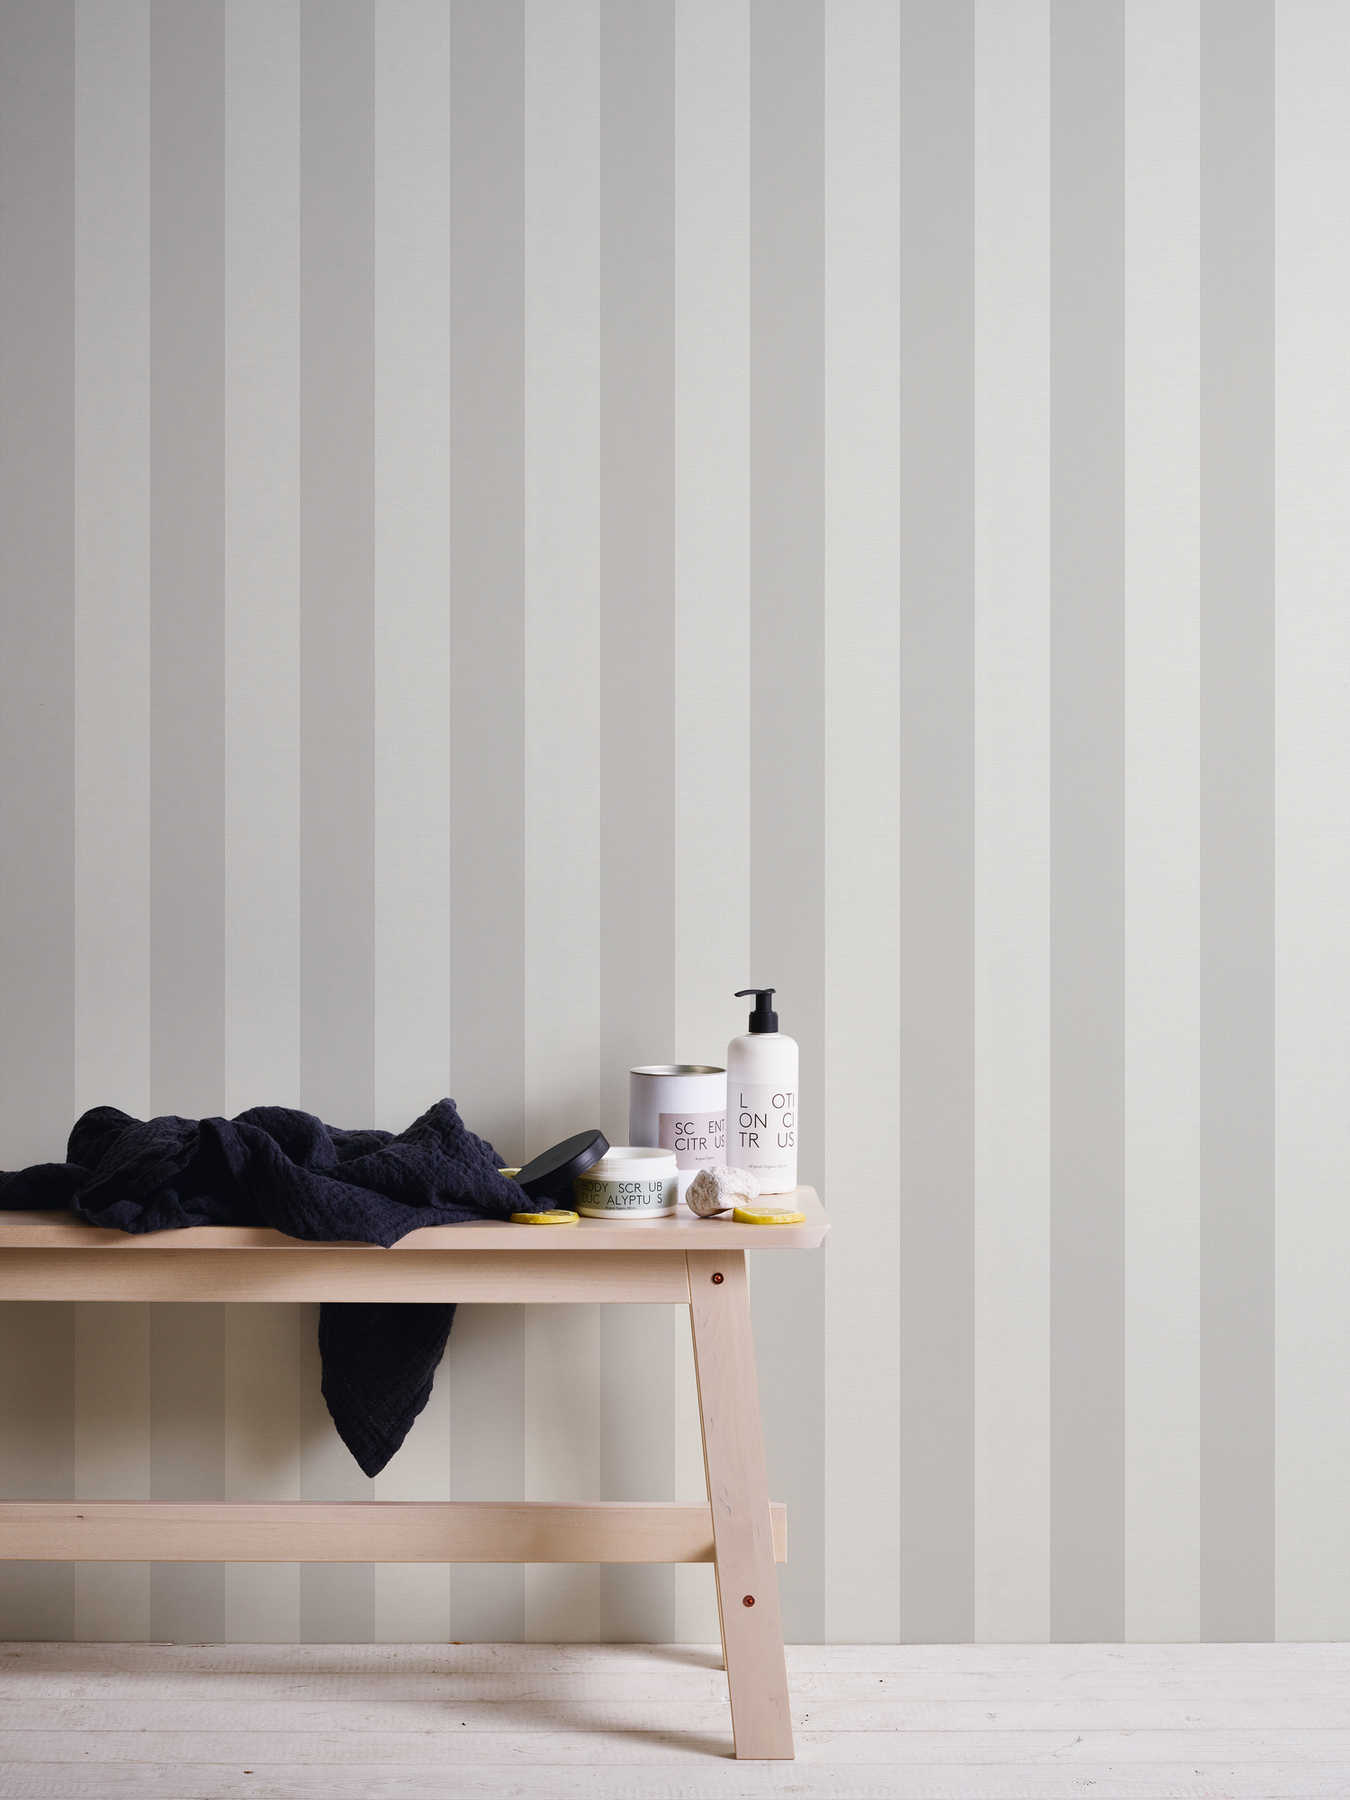             Blokstreepbehang met textiellook voor jong design - grijs, wit
        